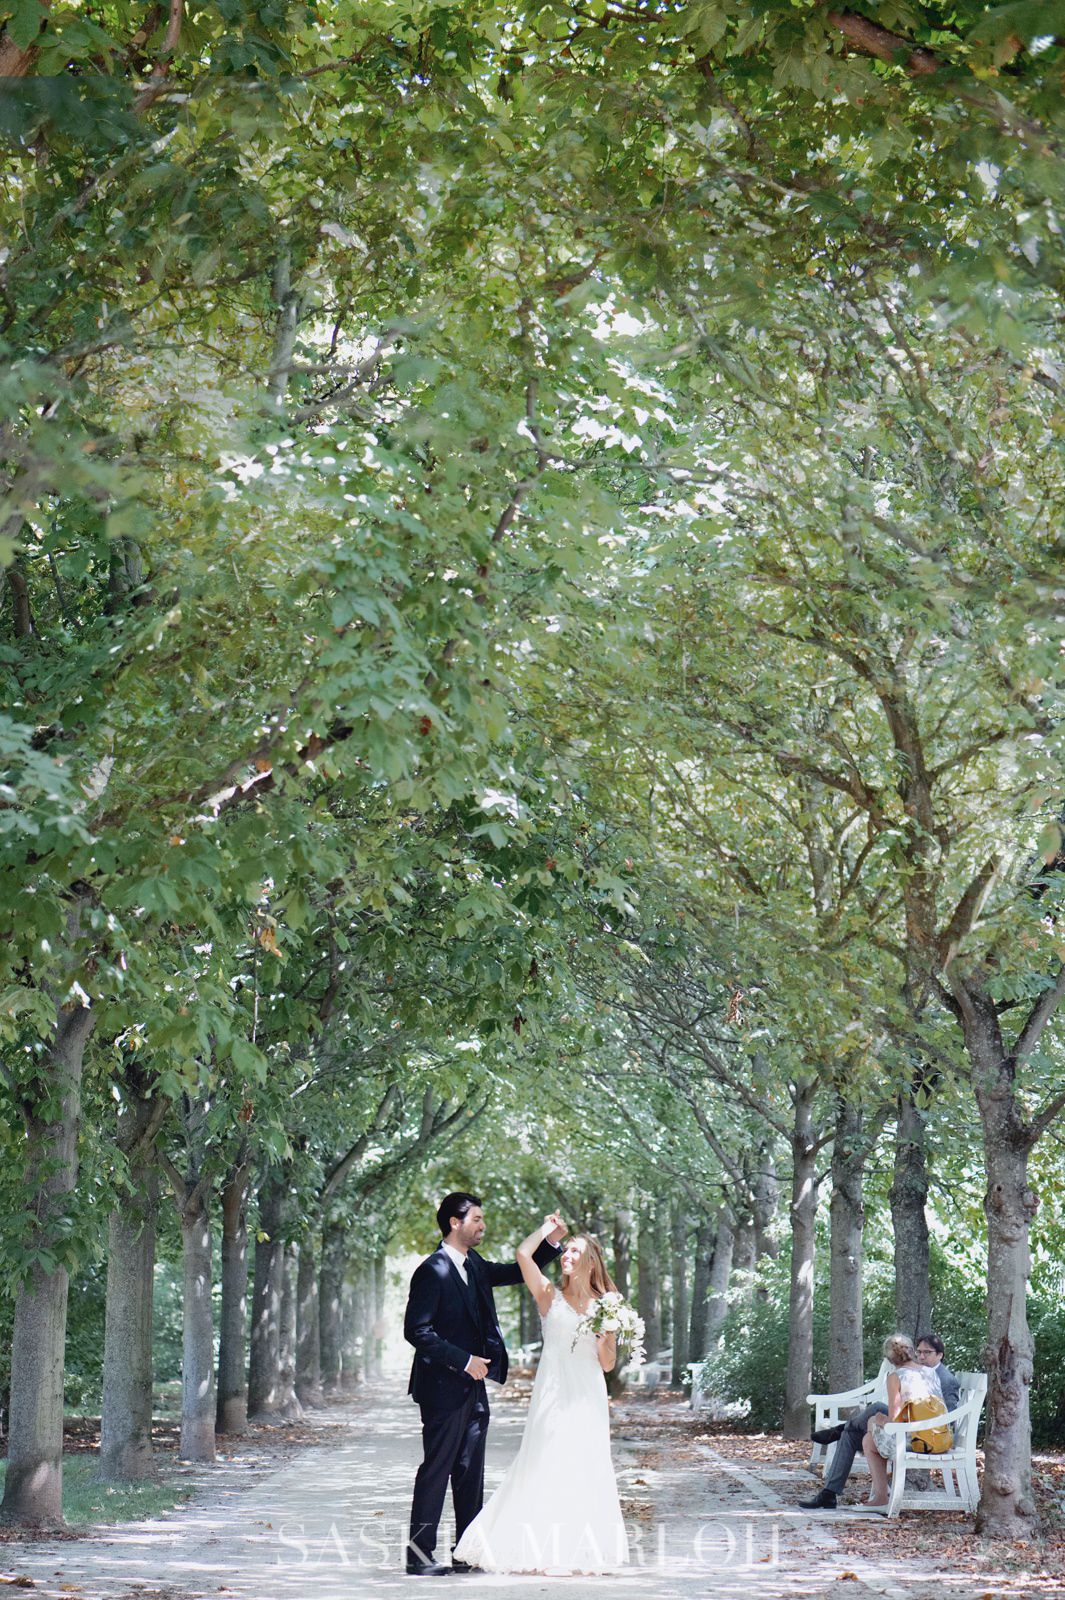 SCHLOSS-BIEBRICH-WEDDING-HOCHZEIT-FOTO-PHOTO-SASKIA-MARLOH-07-2